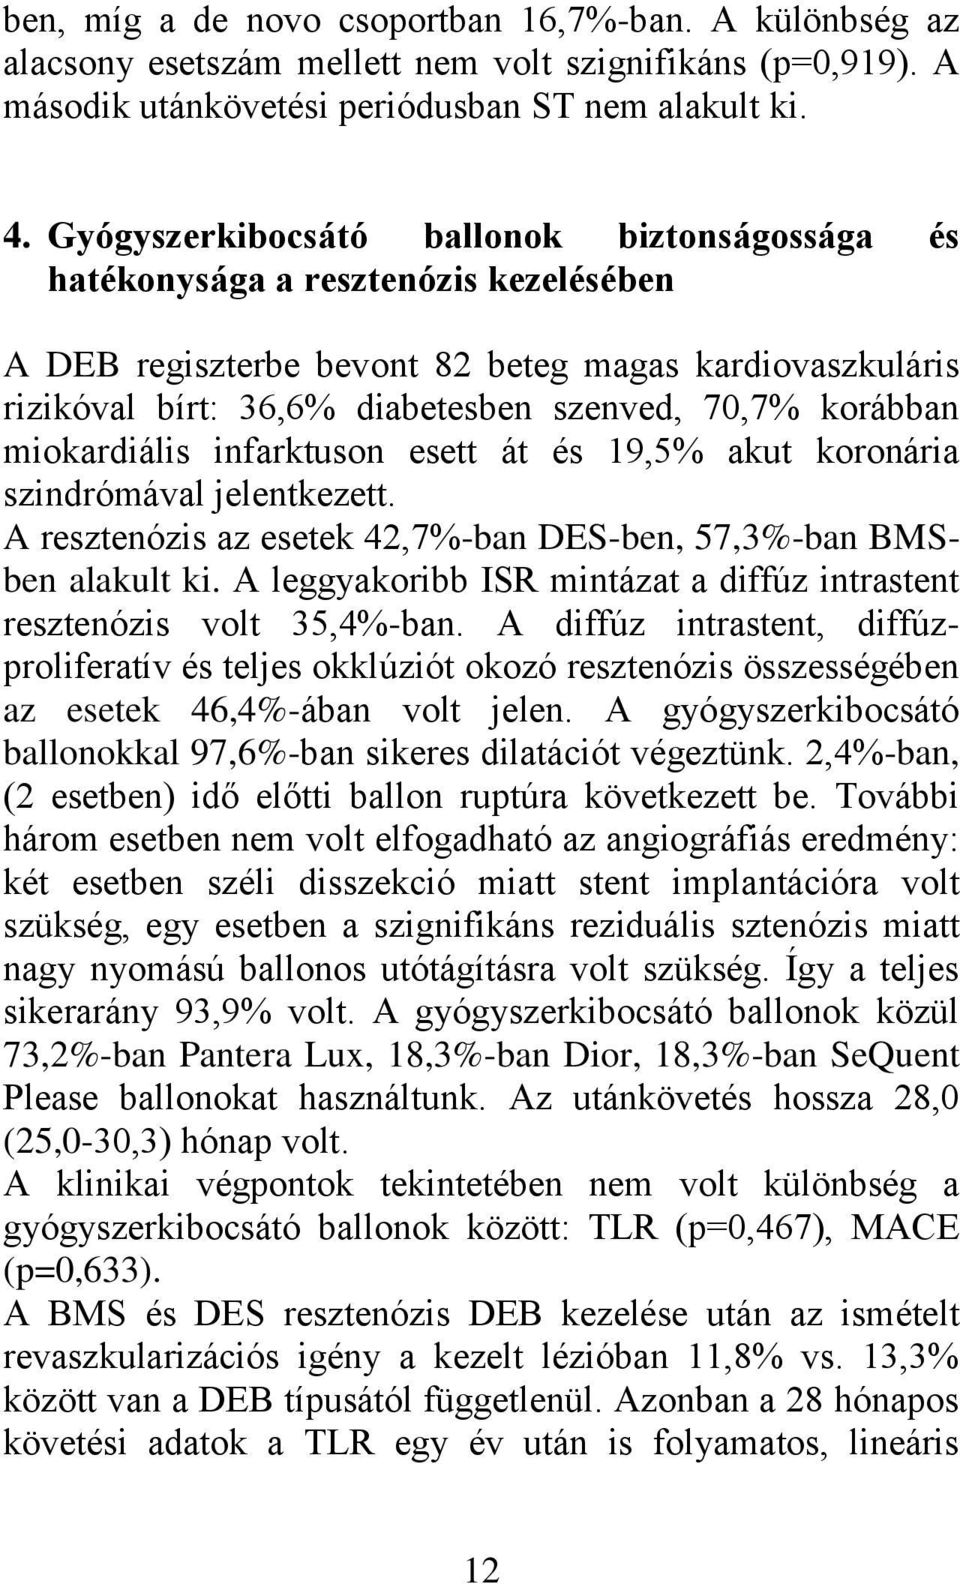 korábban miokardiális infarktuson esett át és 19,5% akut koronária szindrómával jelentkezett. A resztenózis az esetek 42,7%-ban DES-ben, 57,3%-ban BMSben alakult ki.